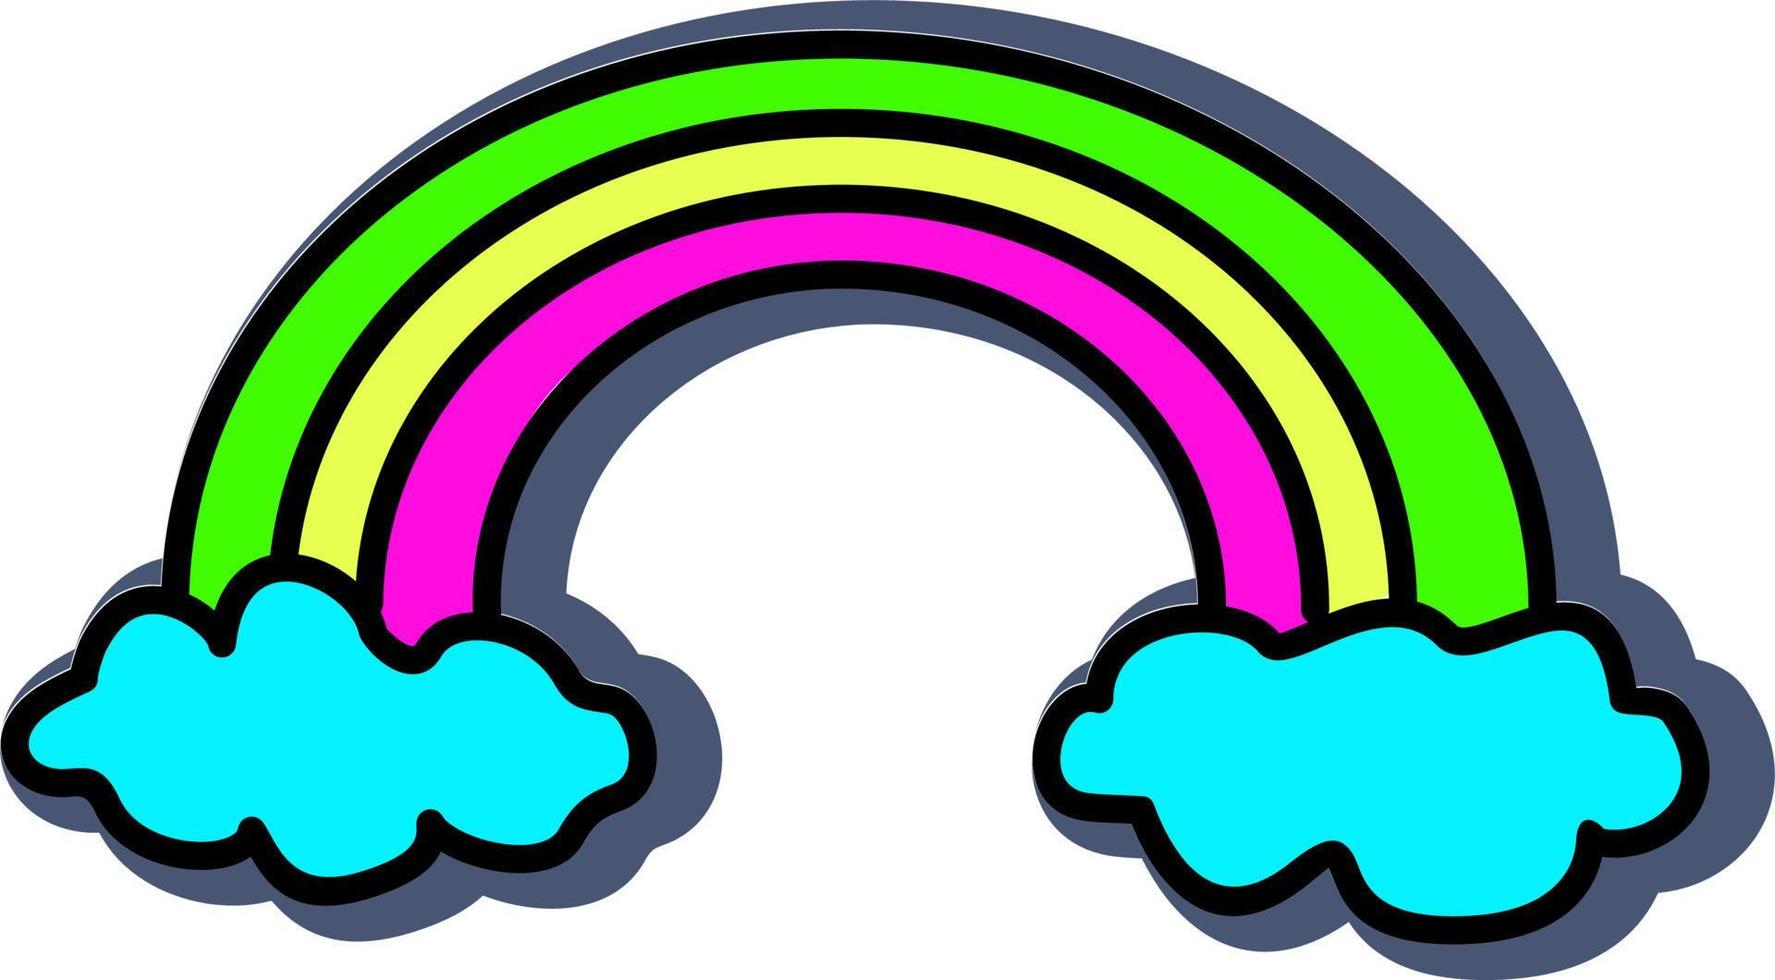 moln med regnbåge ikon. klistermärke. psychedelic retro regnbåge overkligt element klistermärke vektor